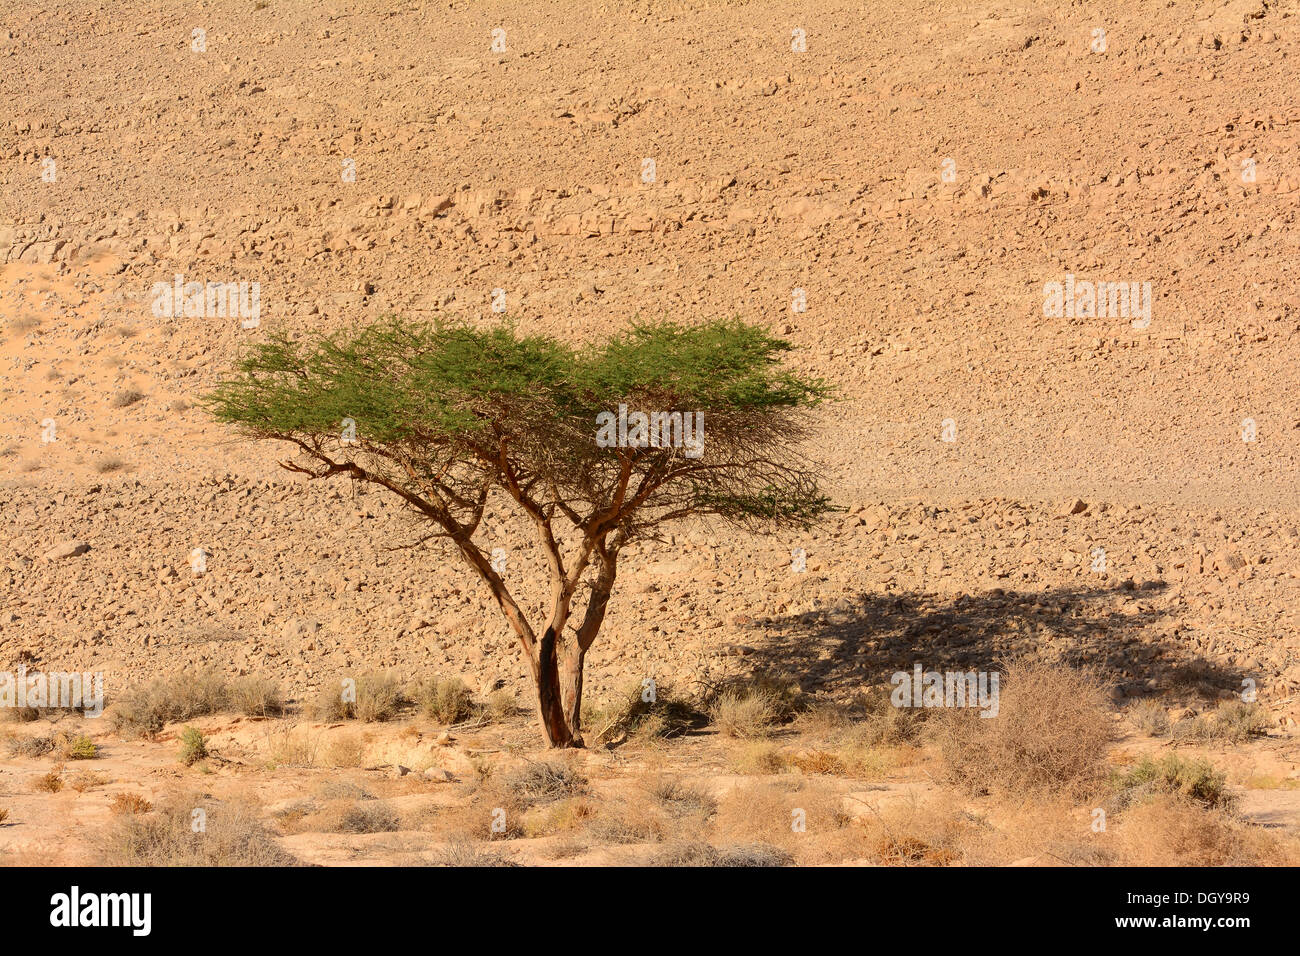 Acacia dans le désert Photo Stock - Alamy